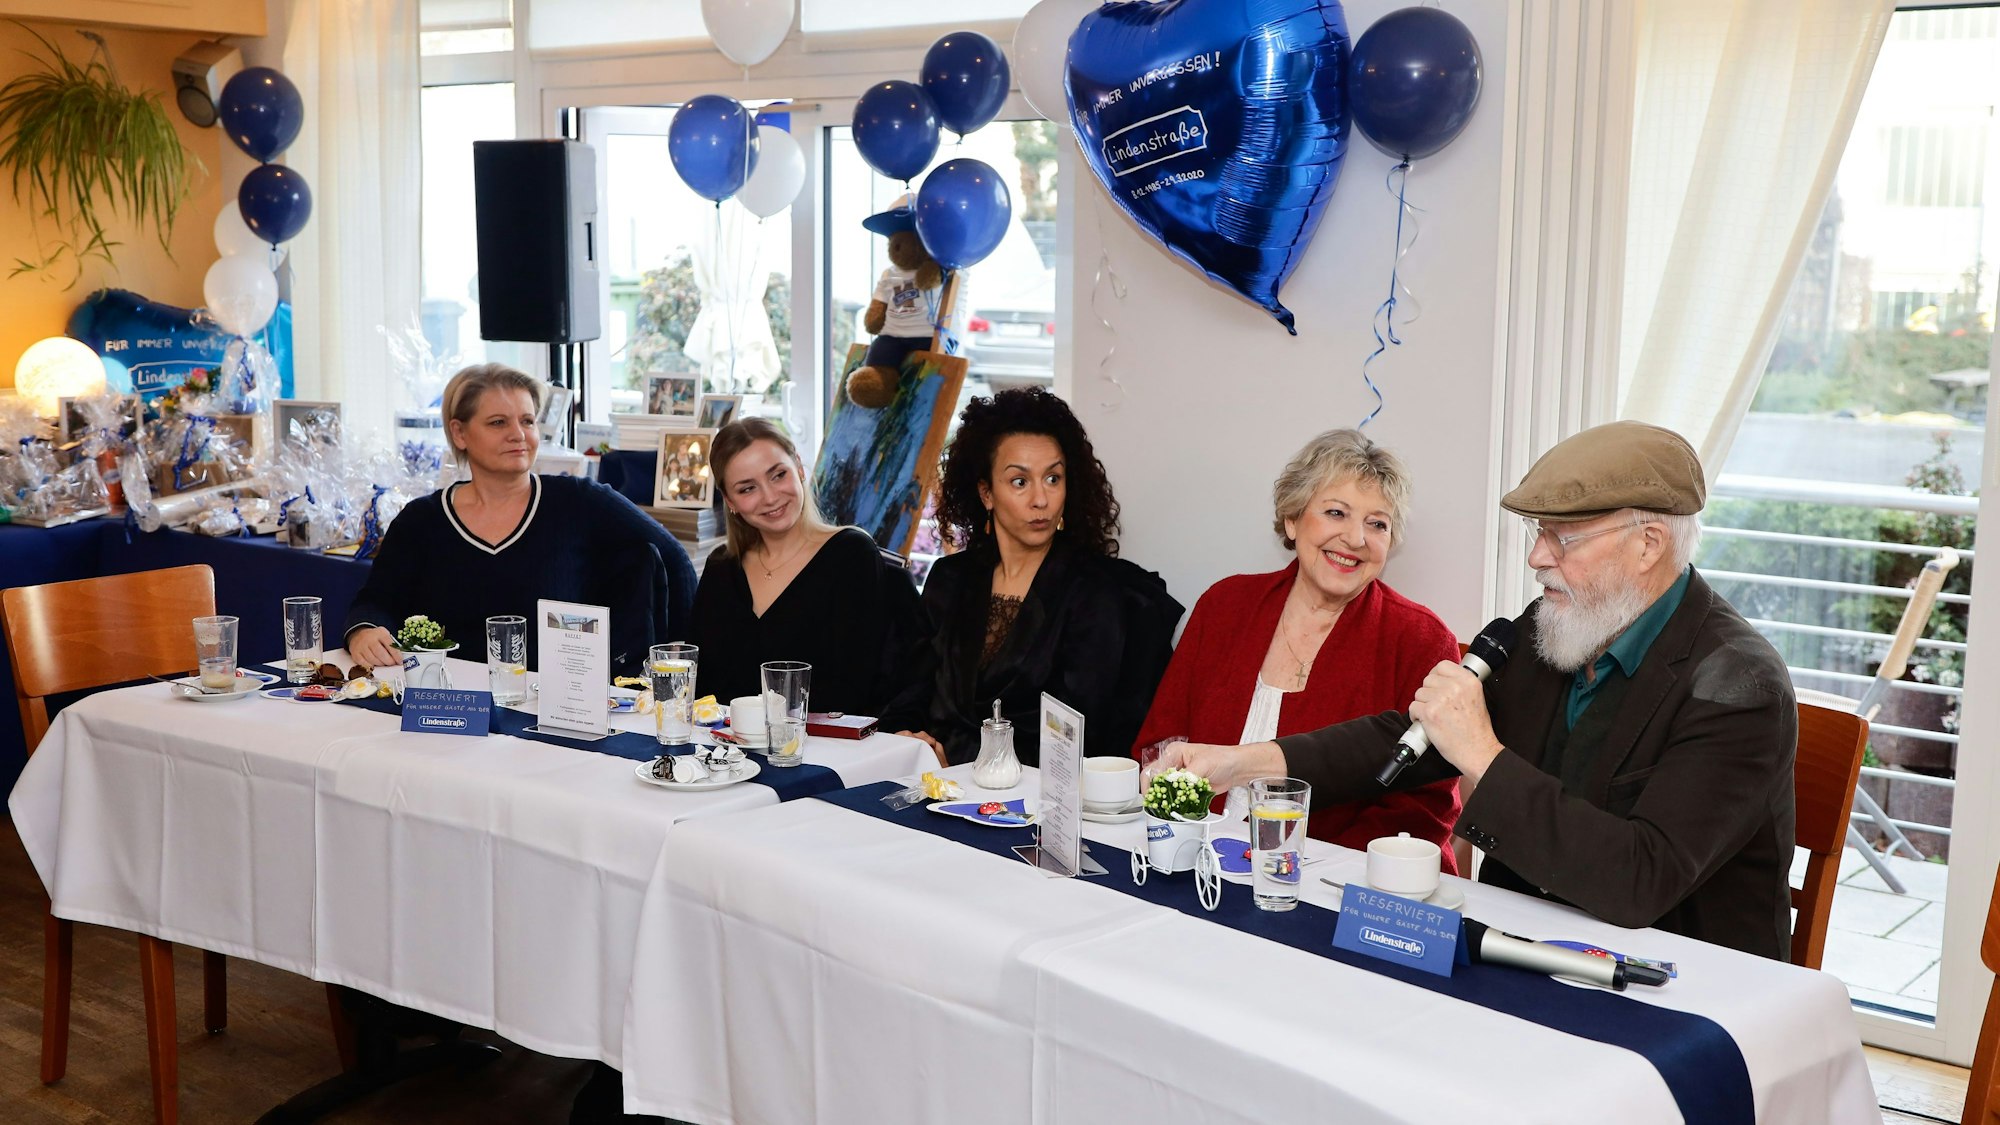 Andrea Spatzek, Anna-Sophia Claus, Dunja Dogmani, Marie-Luise Marjan und Bill Mockridge sitzen bei der Abschiedsparty gemeinsam an einem Tisch.